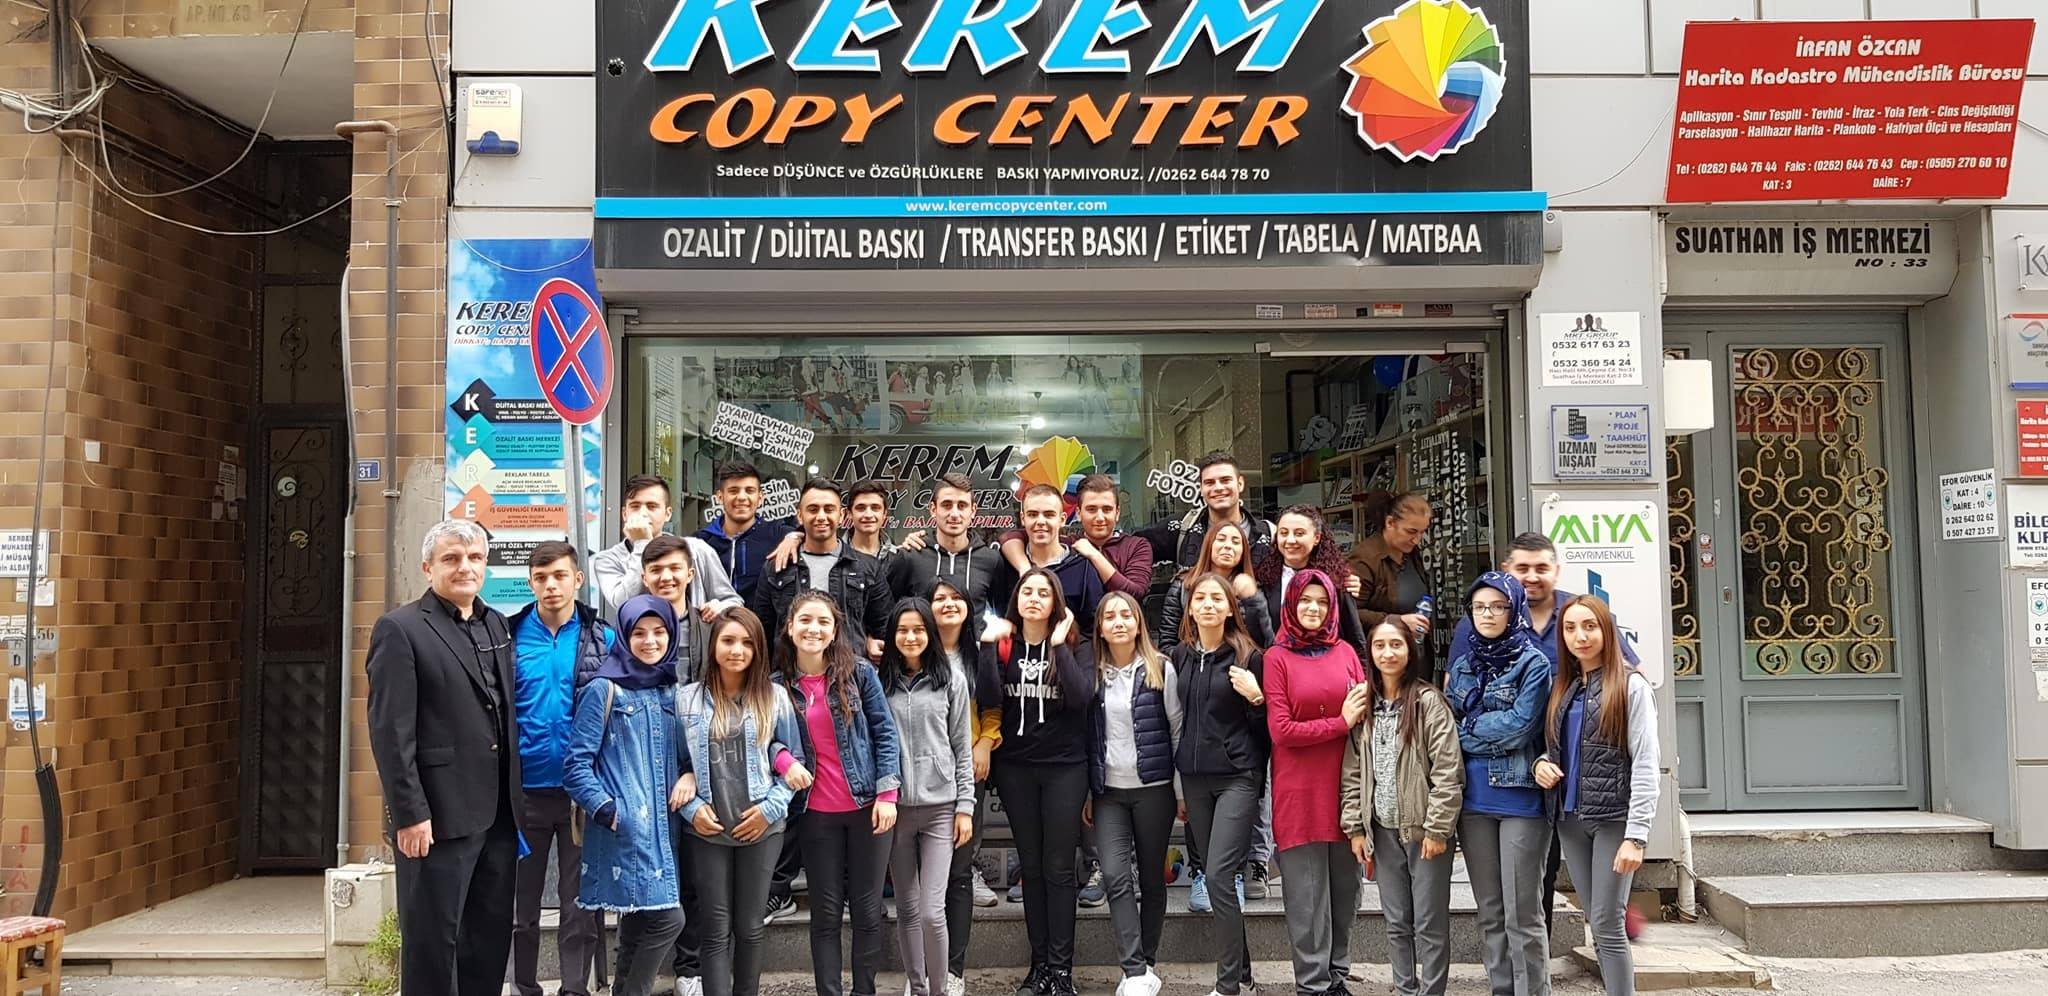 Darıcalı öğrenciler, Kerem Copy Center'ı ziyaret ettiler